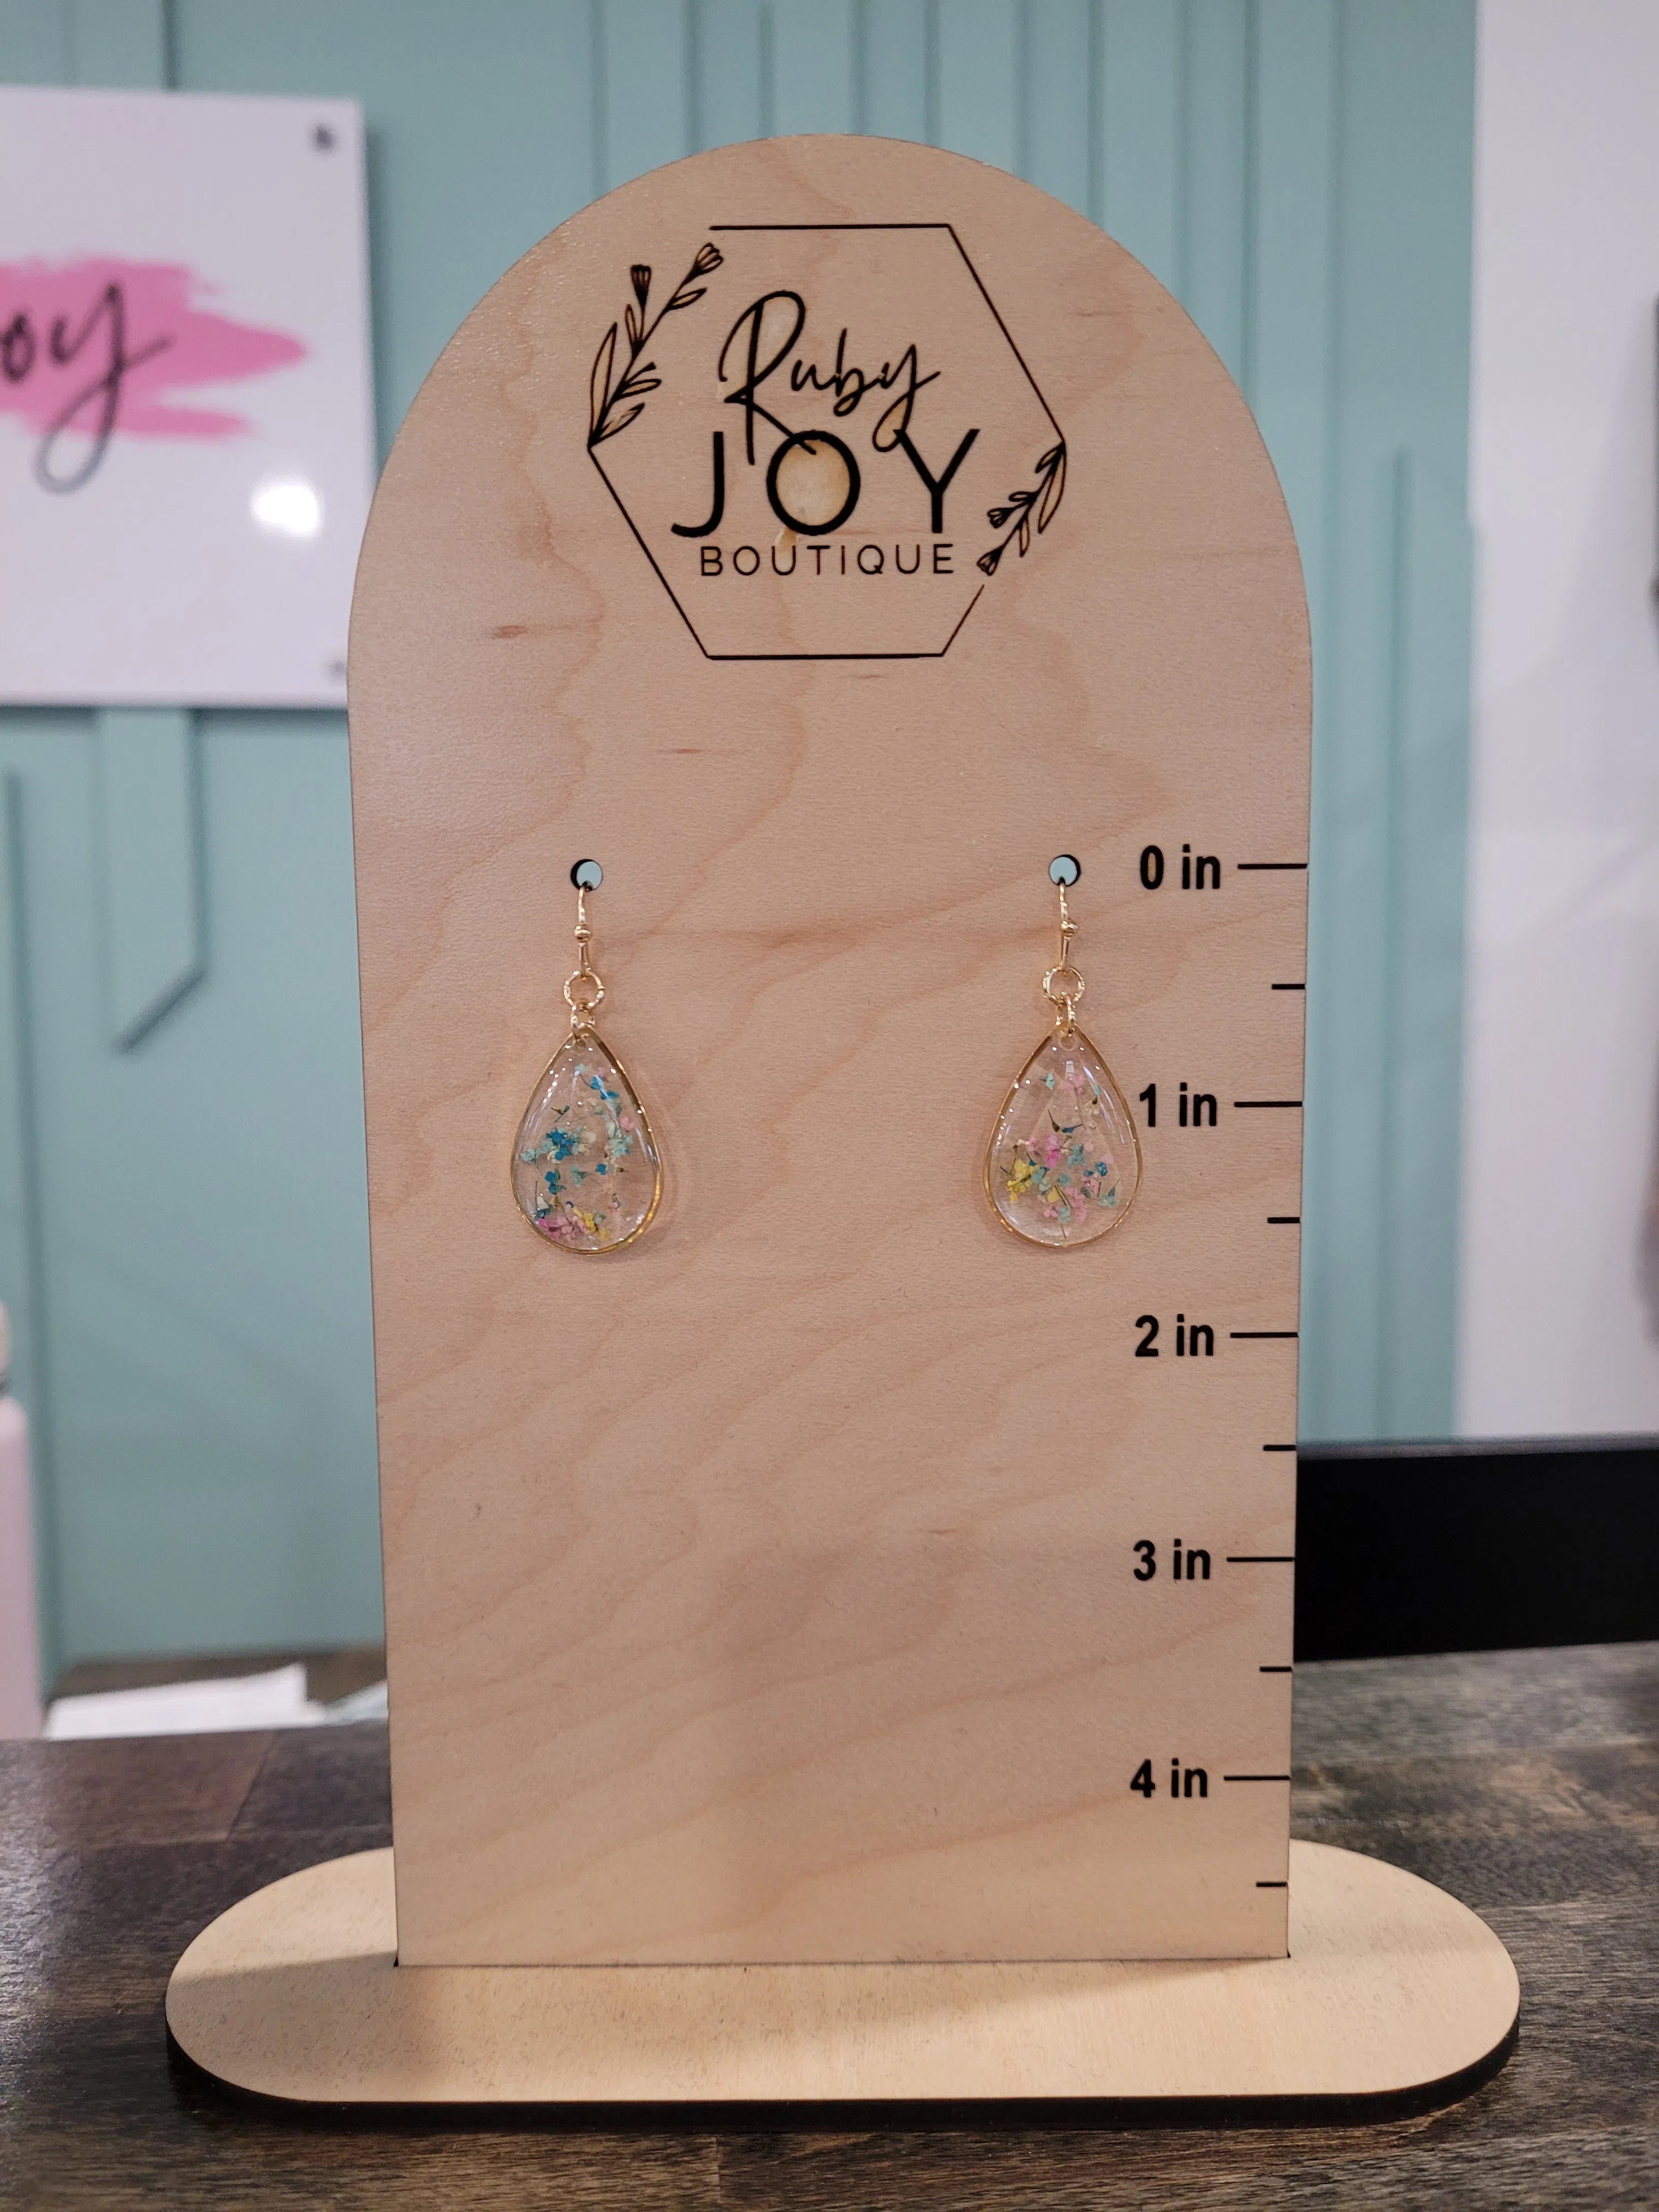 Shop Lani Floral Teardrop Earrings-Earrings at Ruby Joy Boutique, a Women's Clothing Store in Pickerington, Ohio